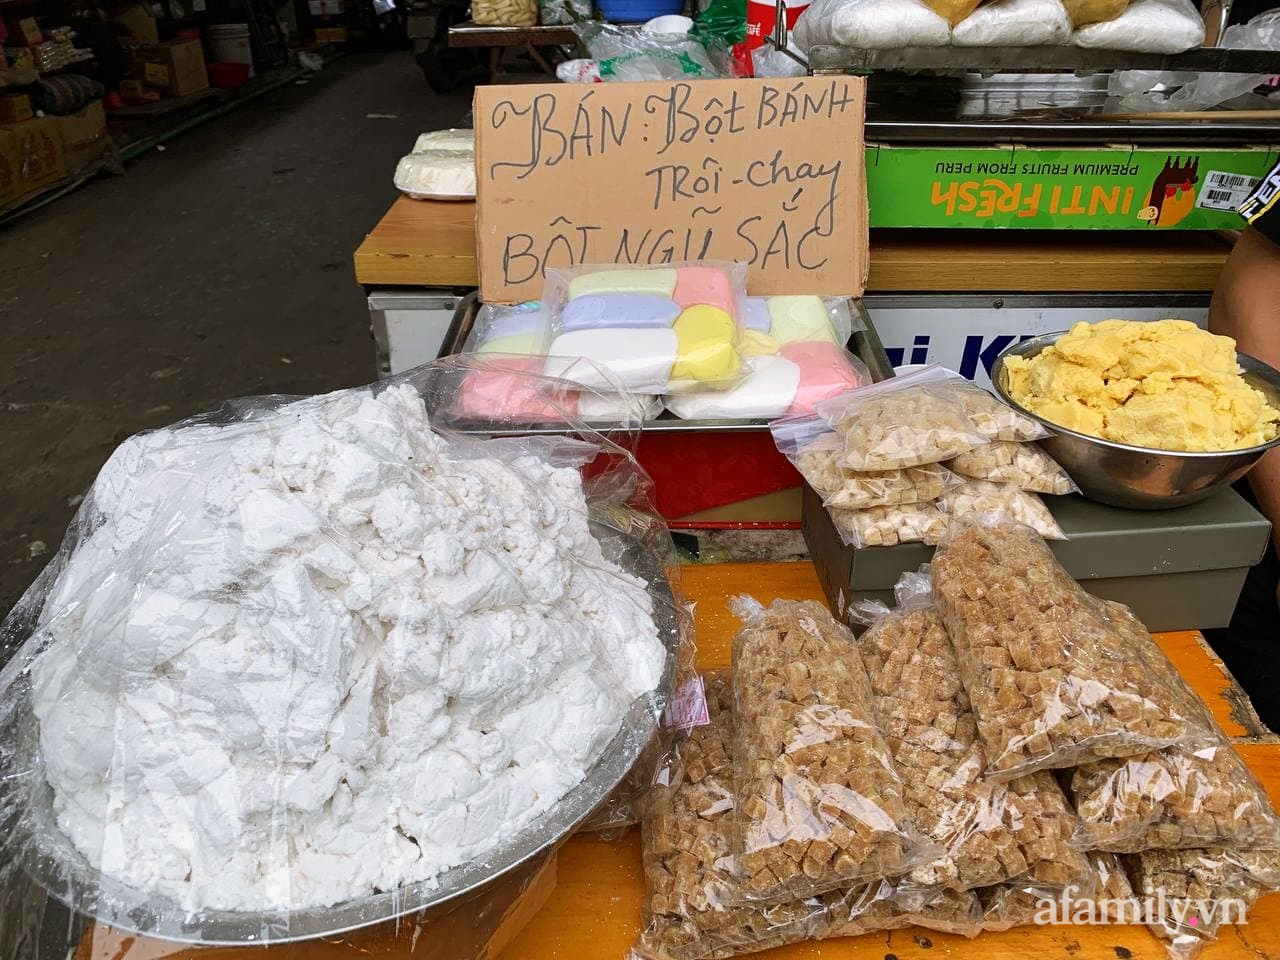 Tết Hàn thực: Ngay từ sớm dân Hà Nội đã nhộn nhịp xếp hàng đi chợ mua bánh trôi bánh chay, sắm đồ cúng lễ - Ảnh 8.